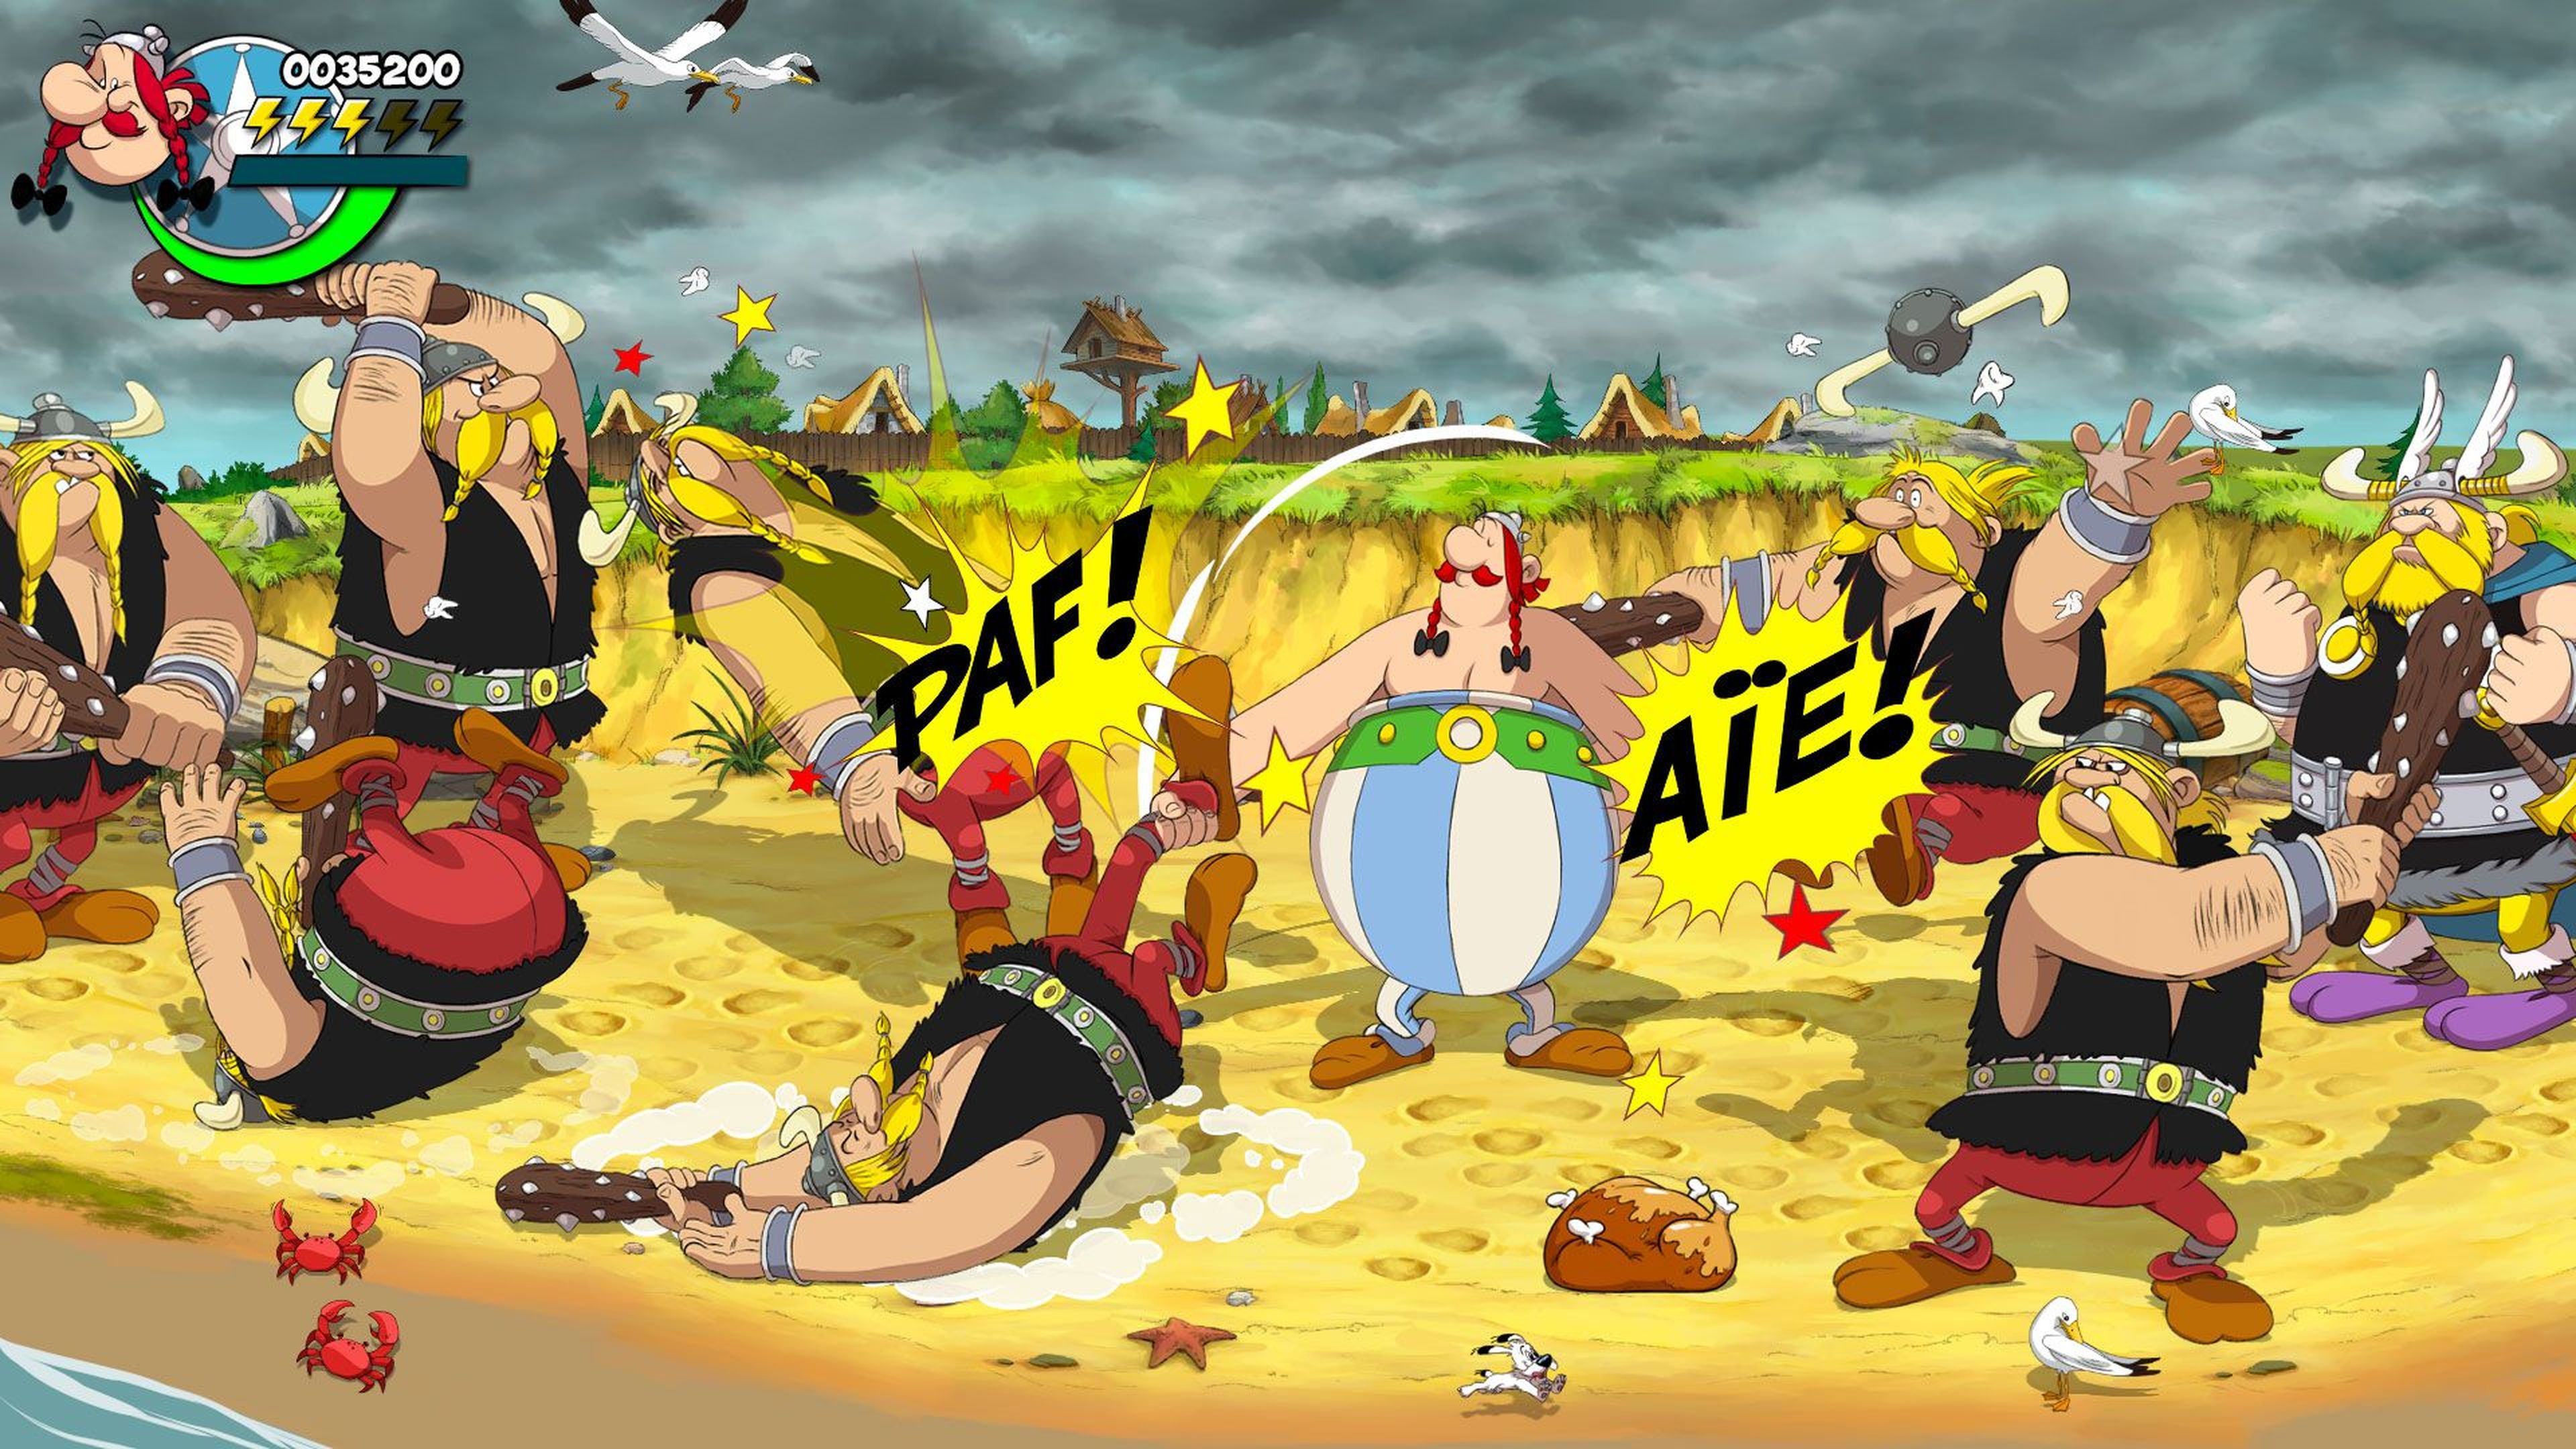 Asterix & Obelix Slap them all